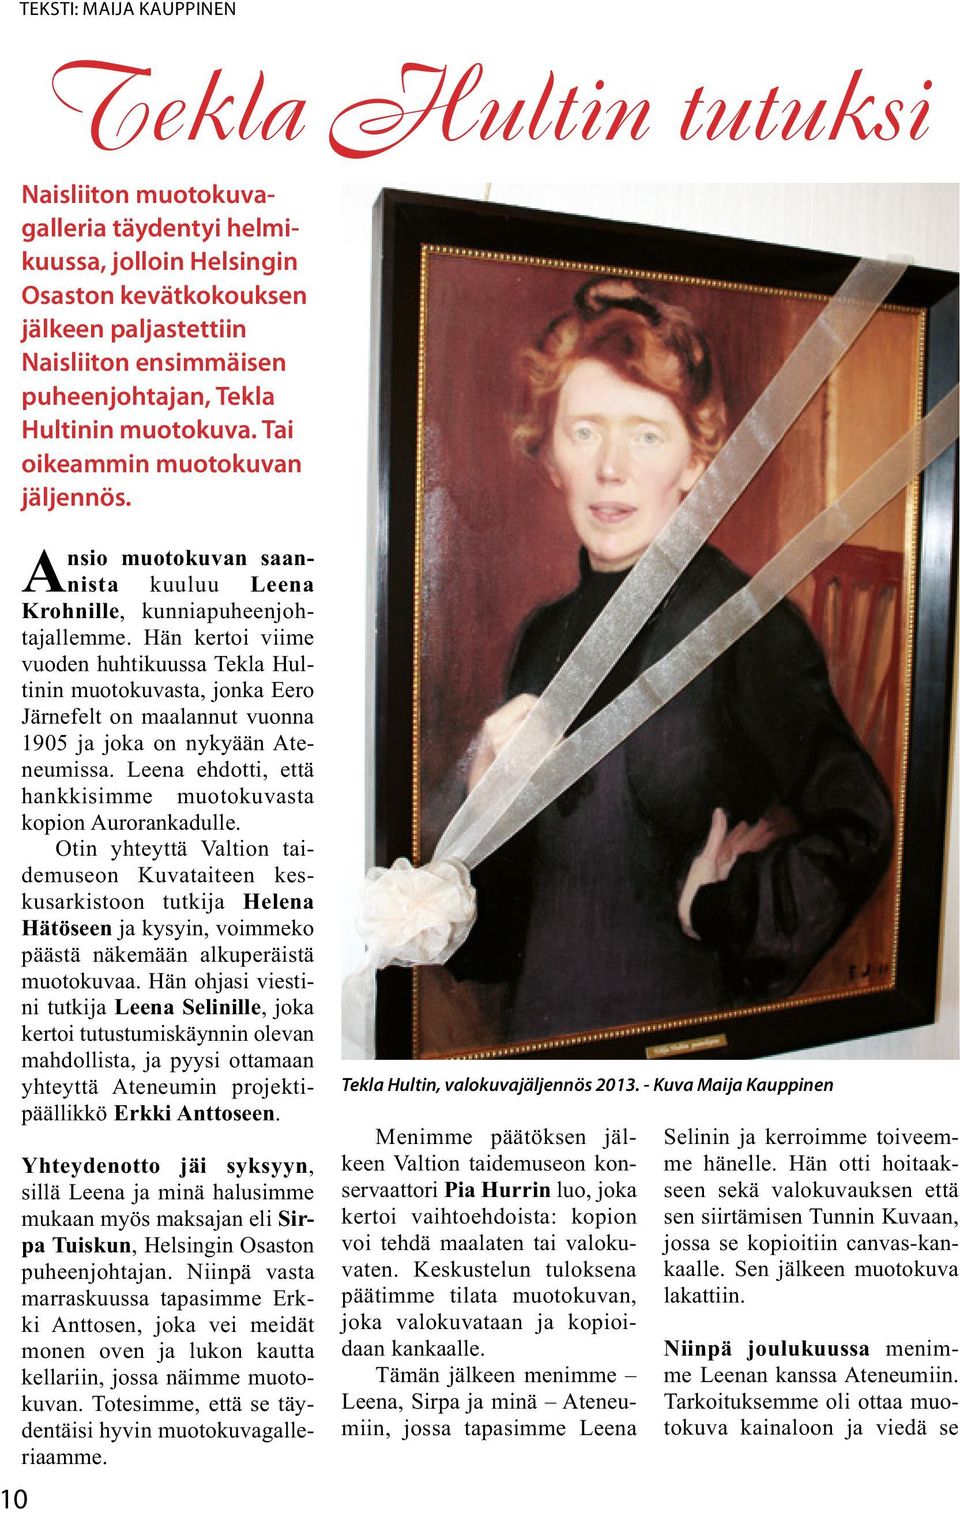 Hän kertoi viime vuoden huhtikuussa Tekla Hultinin muotokuvasta, jonka Eero Järnefelt on maalannut vuonna 1905 ja joka on nykyään Ateneumissa.